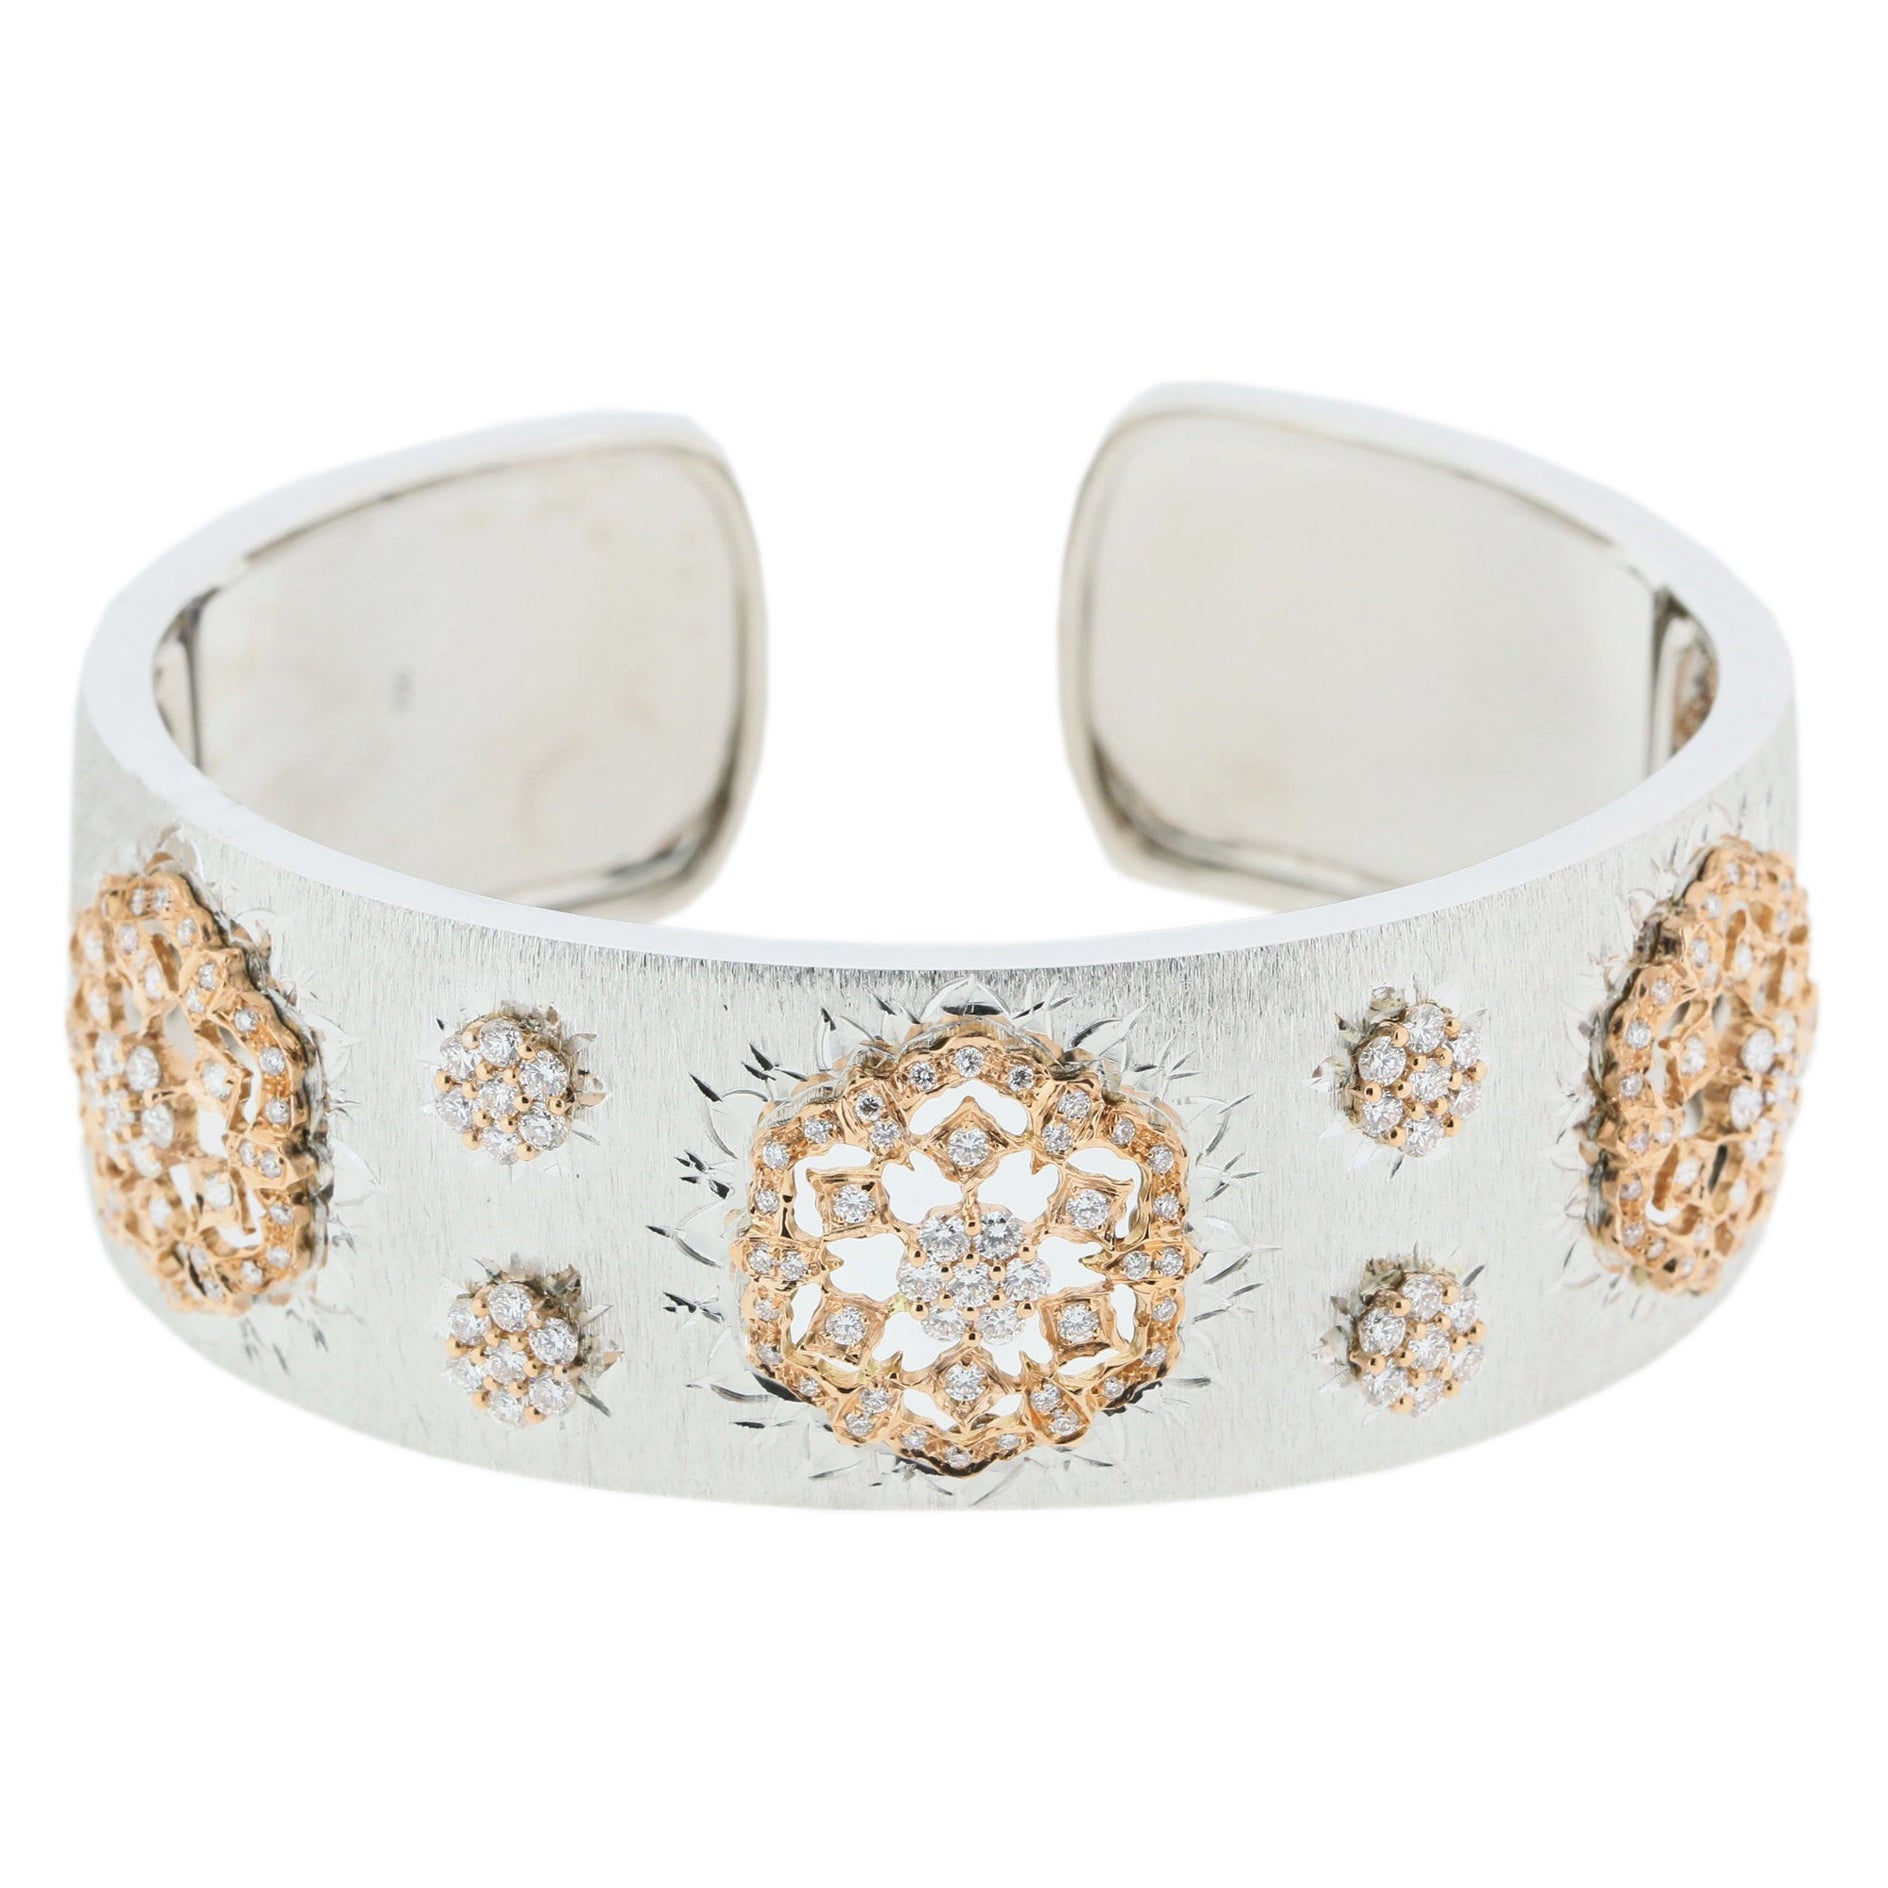 18K White & Rose Gold Diamond Openwork Art Bangle Bracelet in Florentine Finish